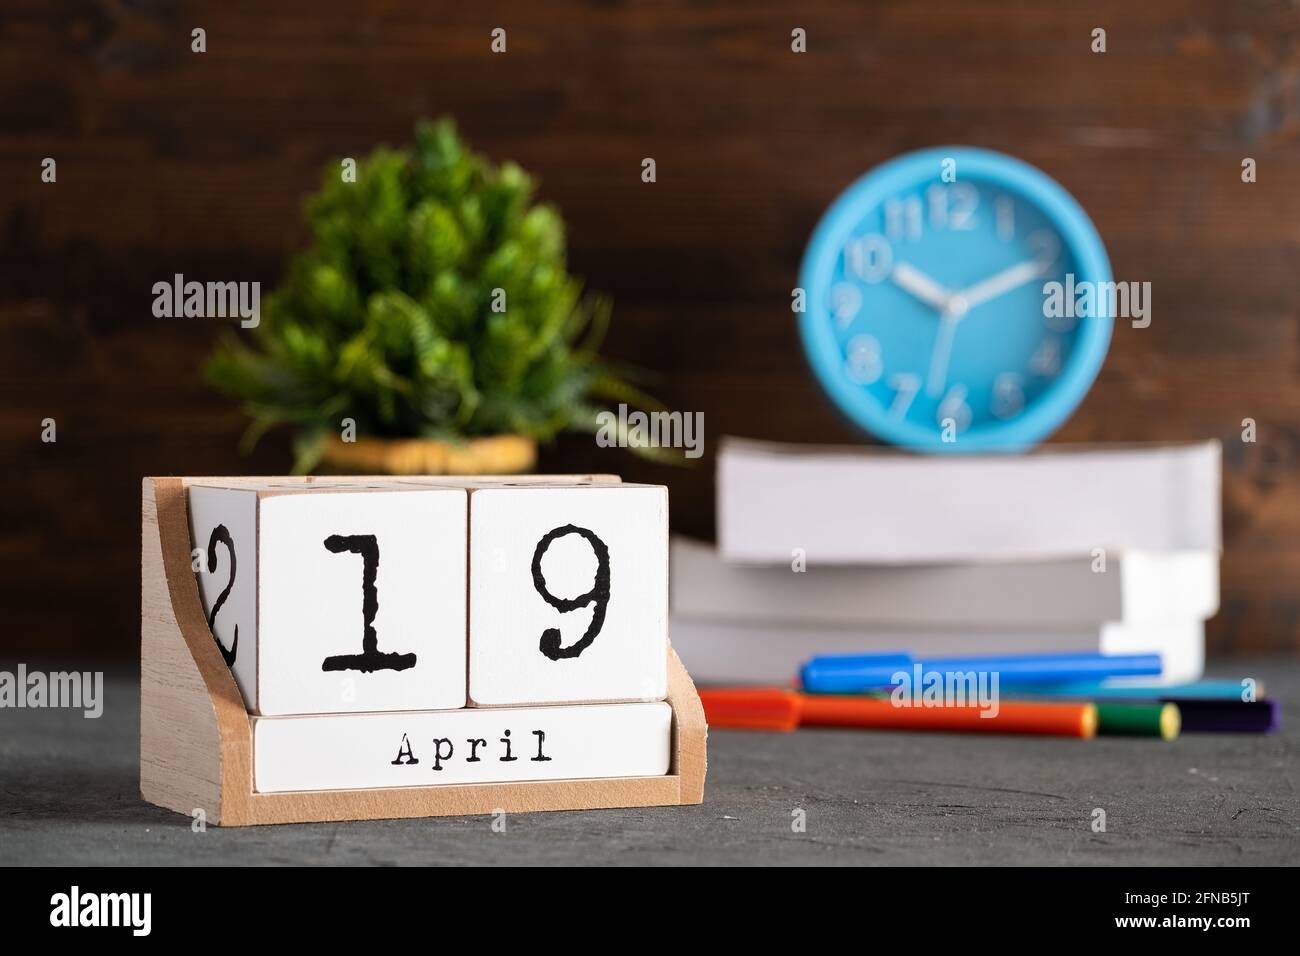 19 avril. Avril 19 calendrier cube en bois avec objets flous sur fond. Banque D'Images